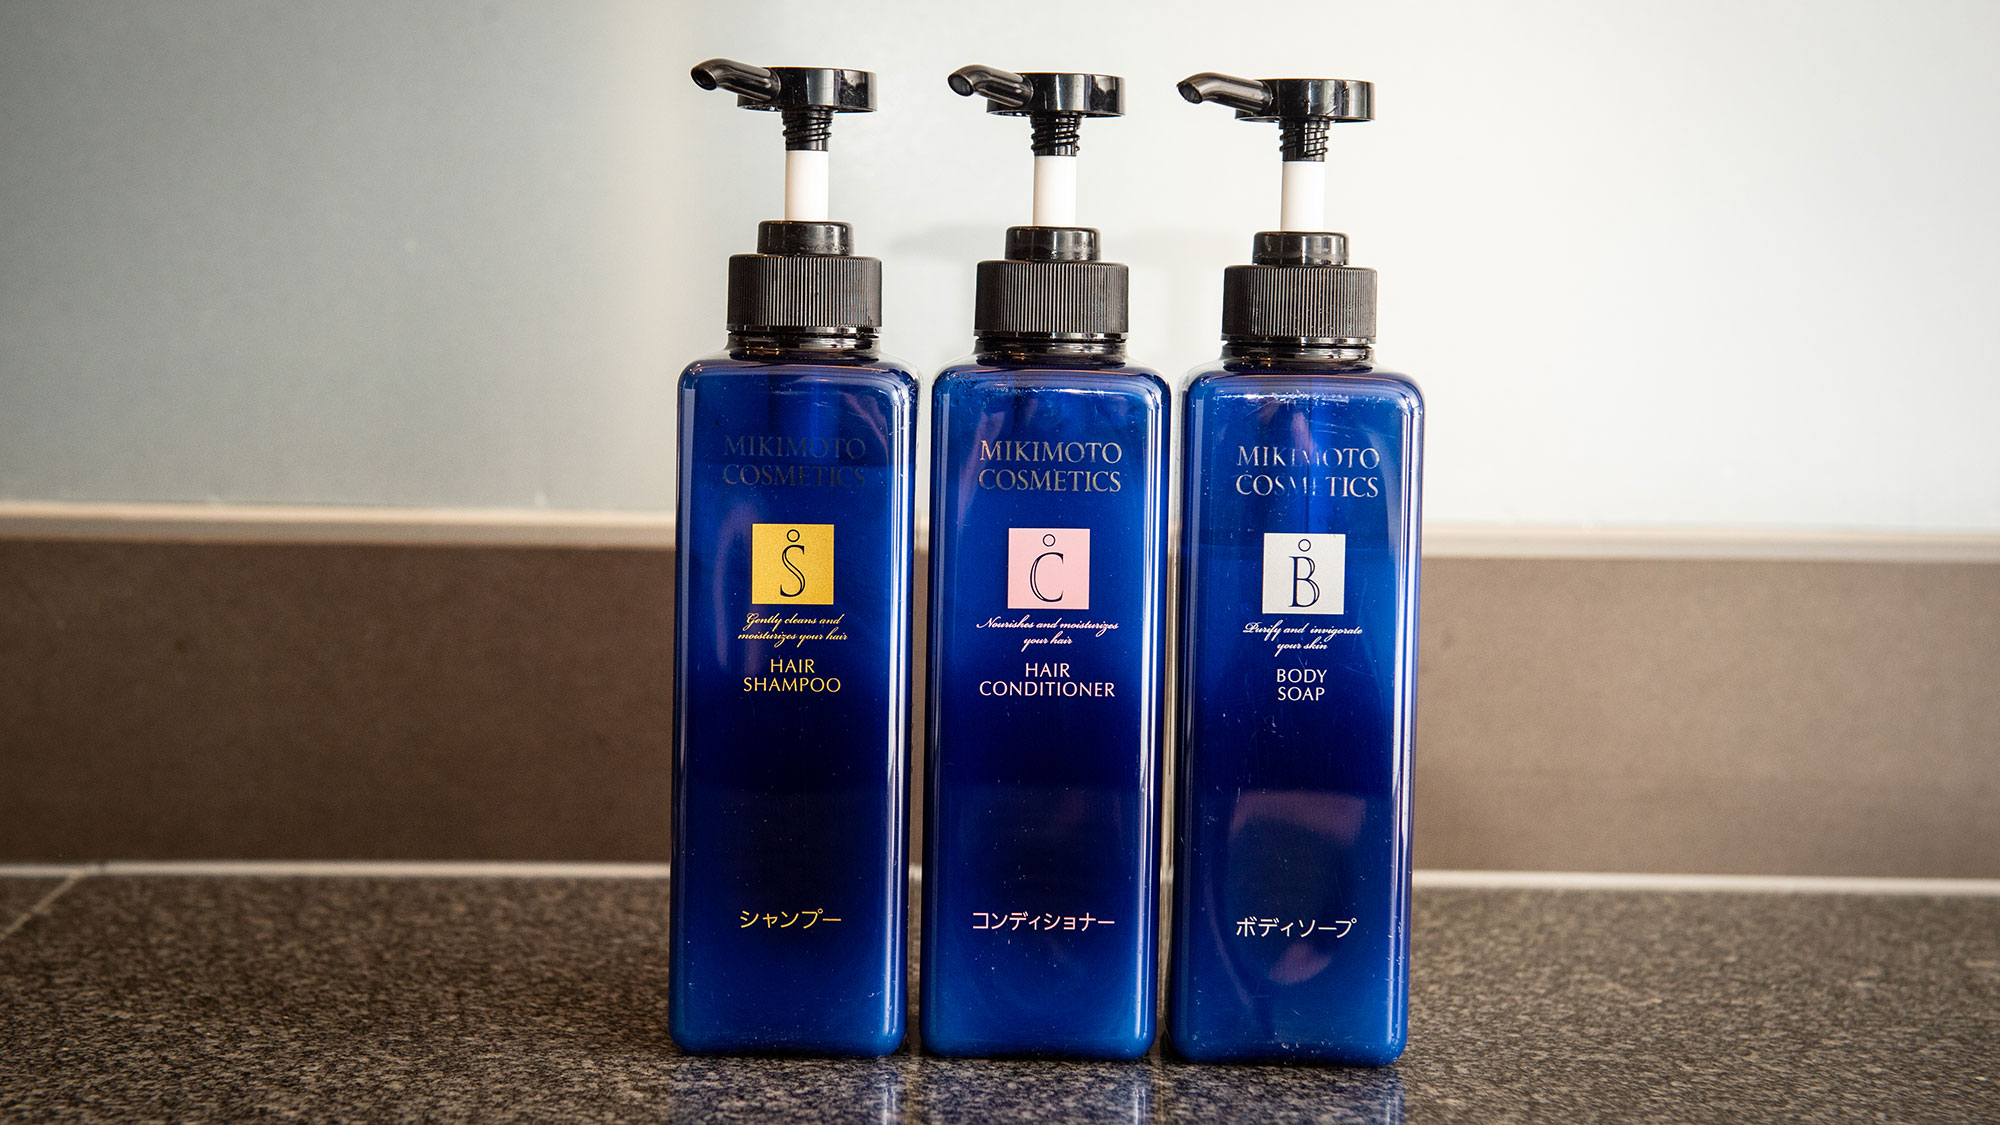 【アメニティ】浴室のシャンプーやボディソープは、ミキモト製品を揃えております。